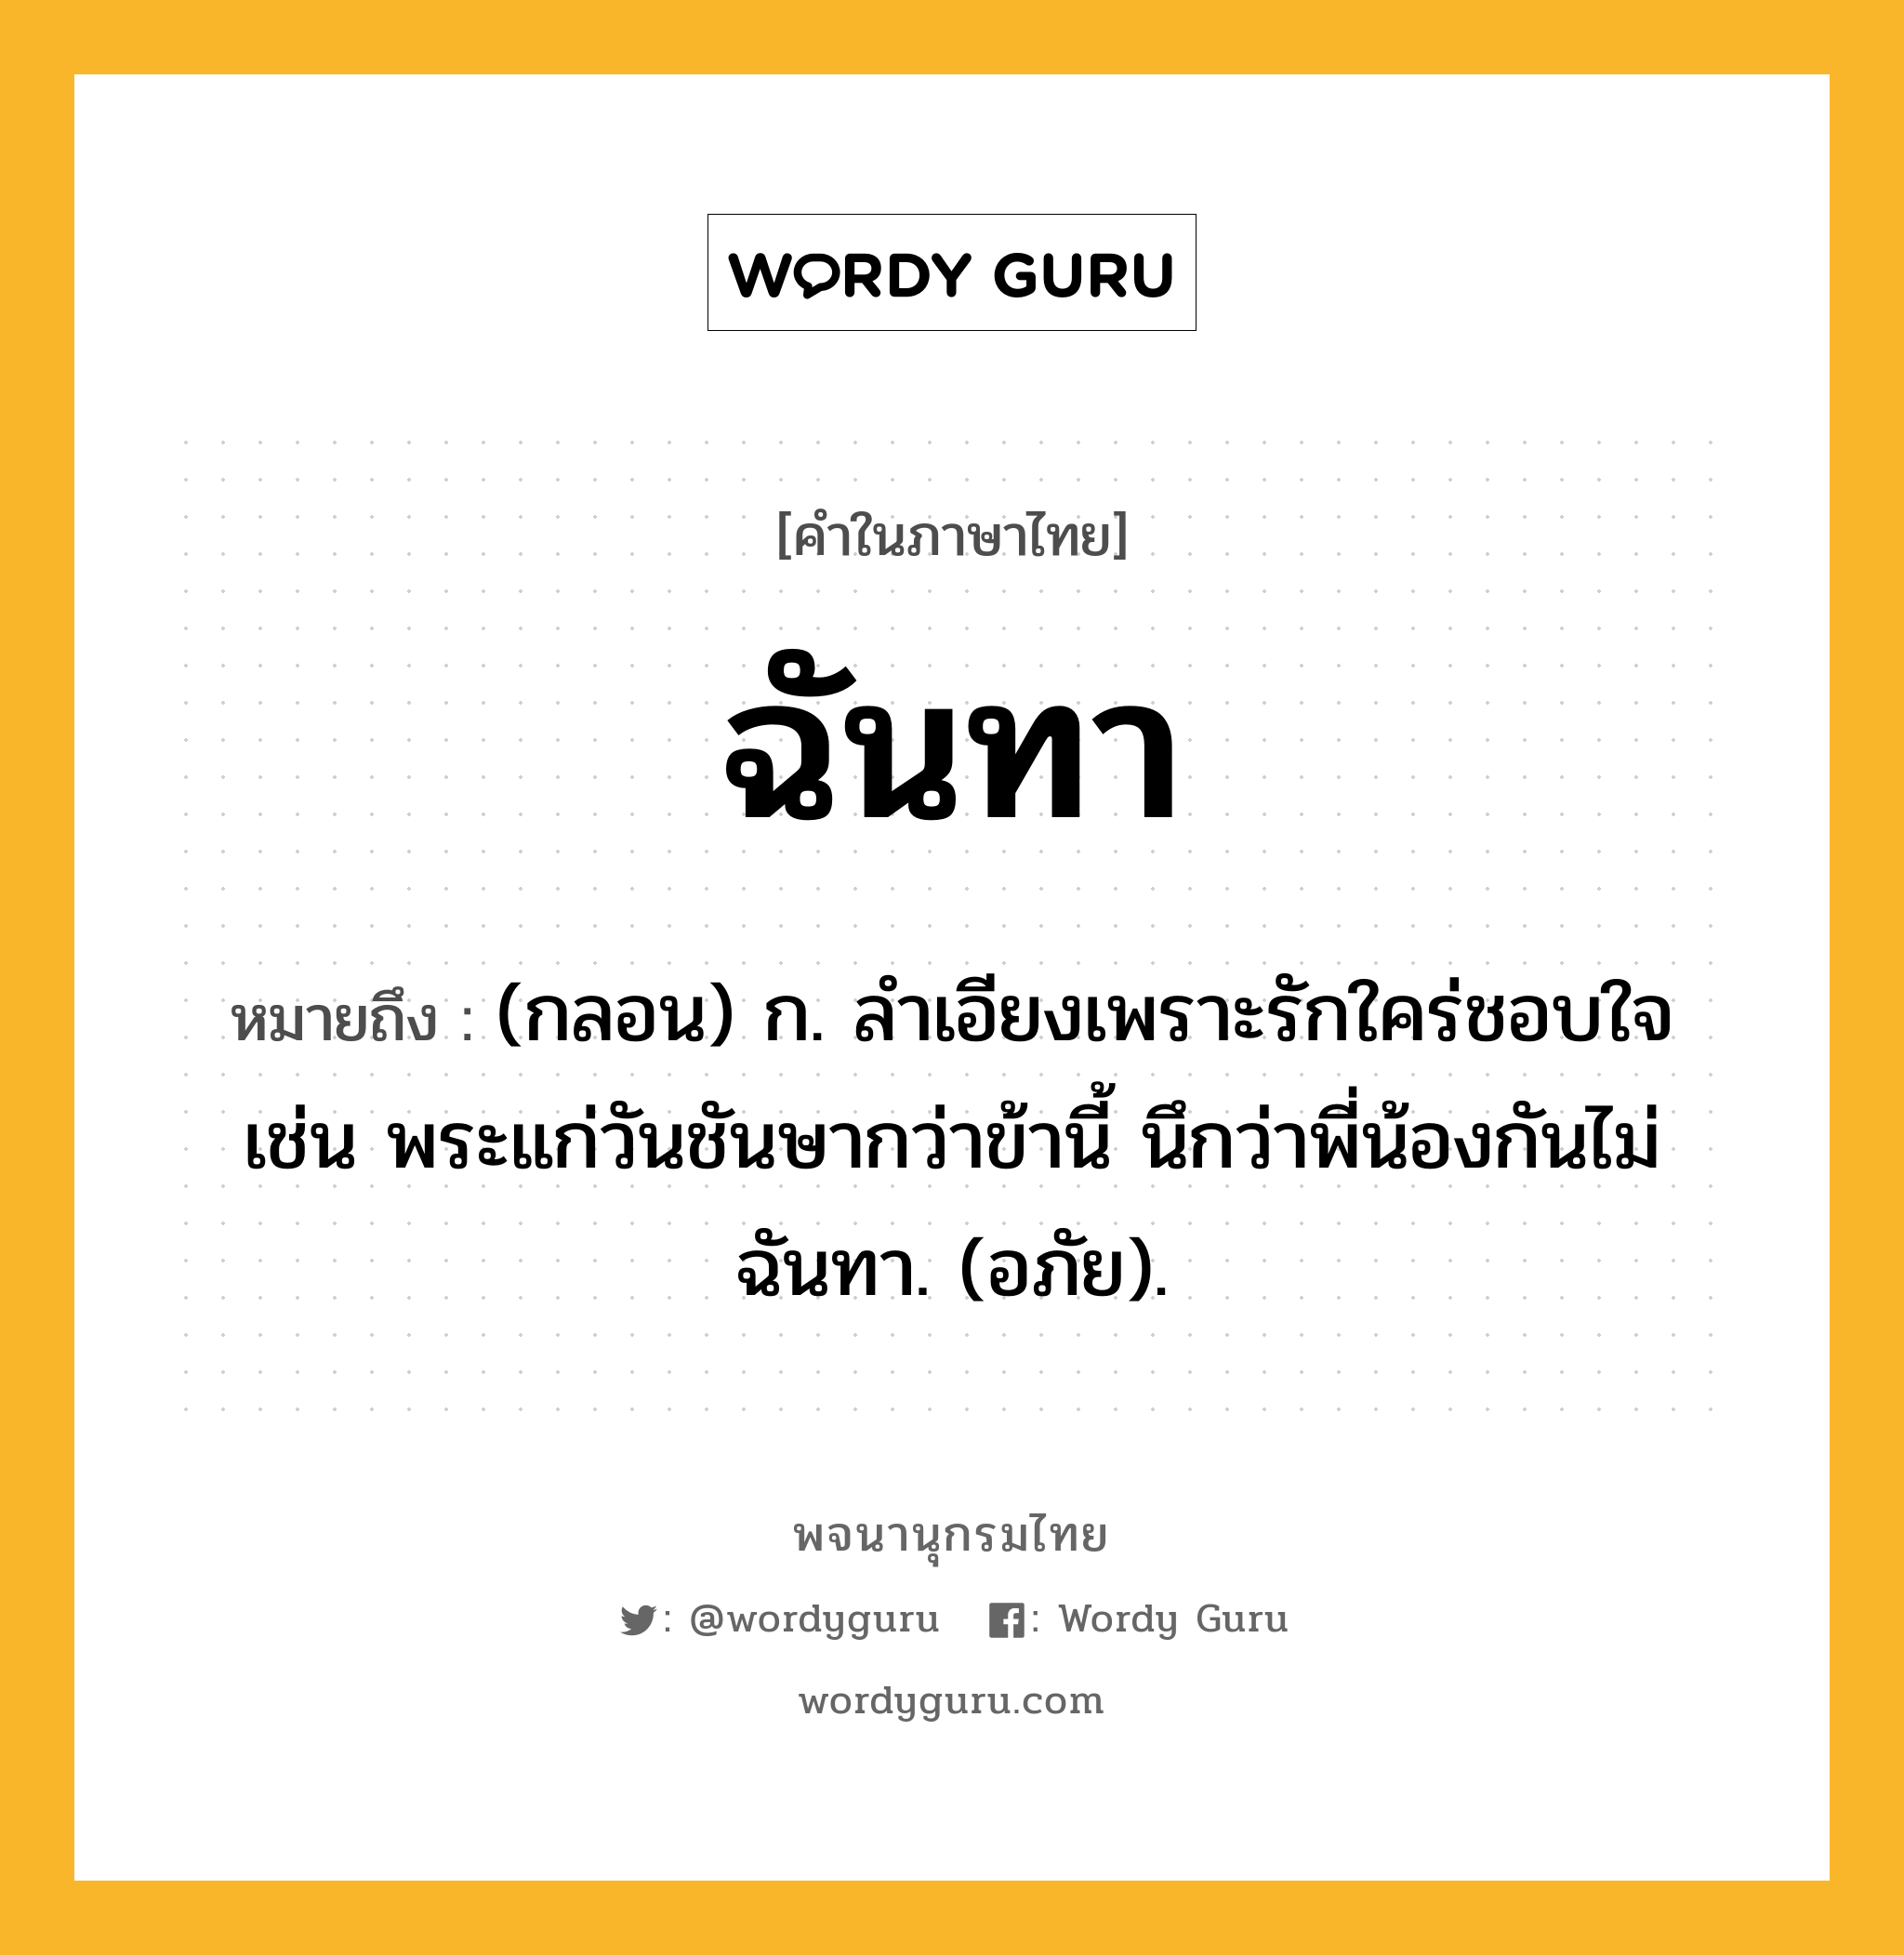 ฉันทา ความหมาย หมายถึงอะไร?, คำในภาษาไทย ฉันทา หมายถึง (กลอน) ก. ลําเอียงเพราะรักใคร่ชอบใจ เช่น พระแก่วันชันษากว่าข้านี้ นึกว่าพี่น้องกันไม่ฉันทา. (อภัย).